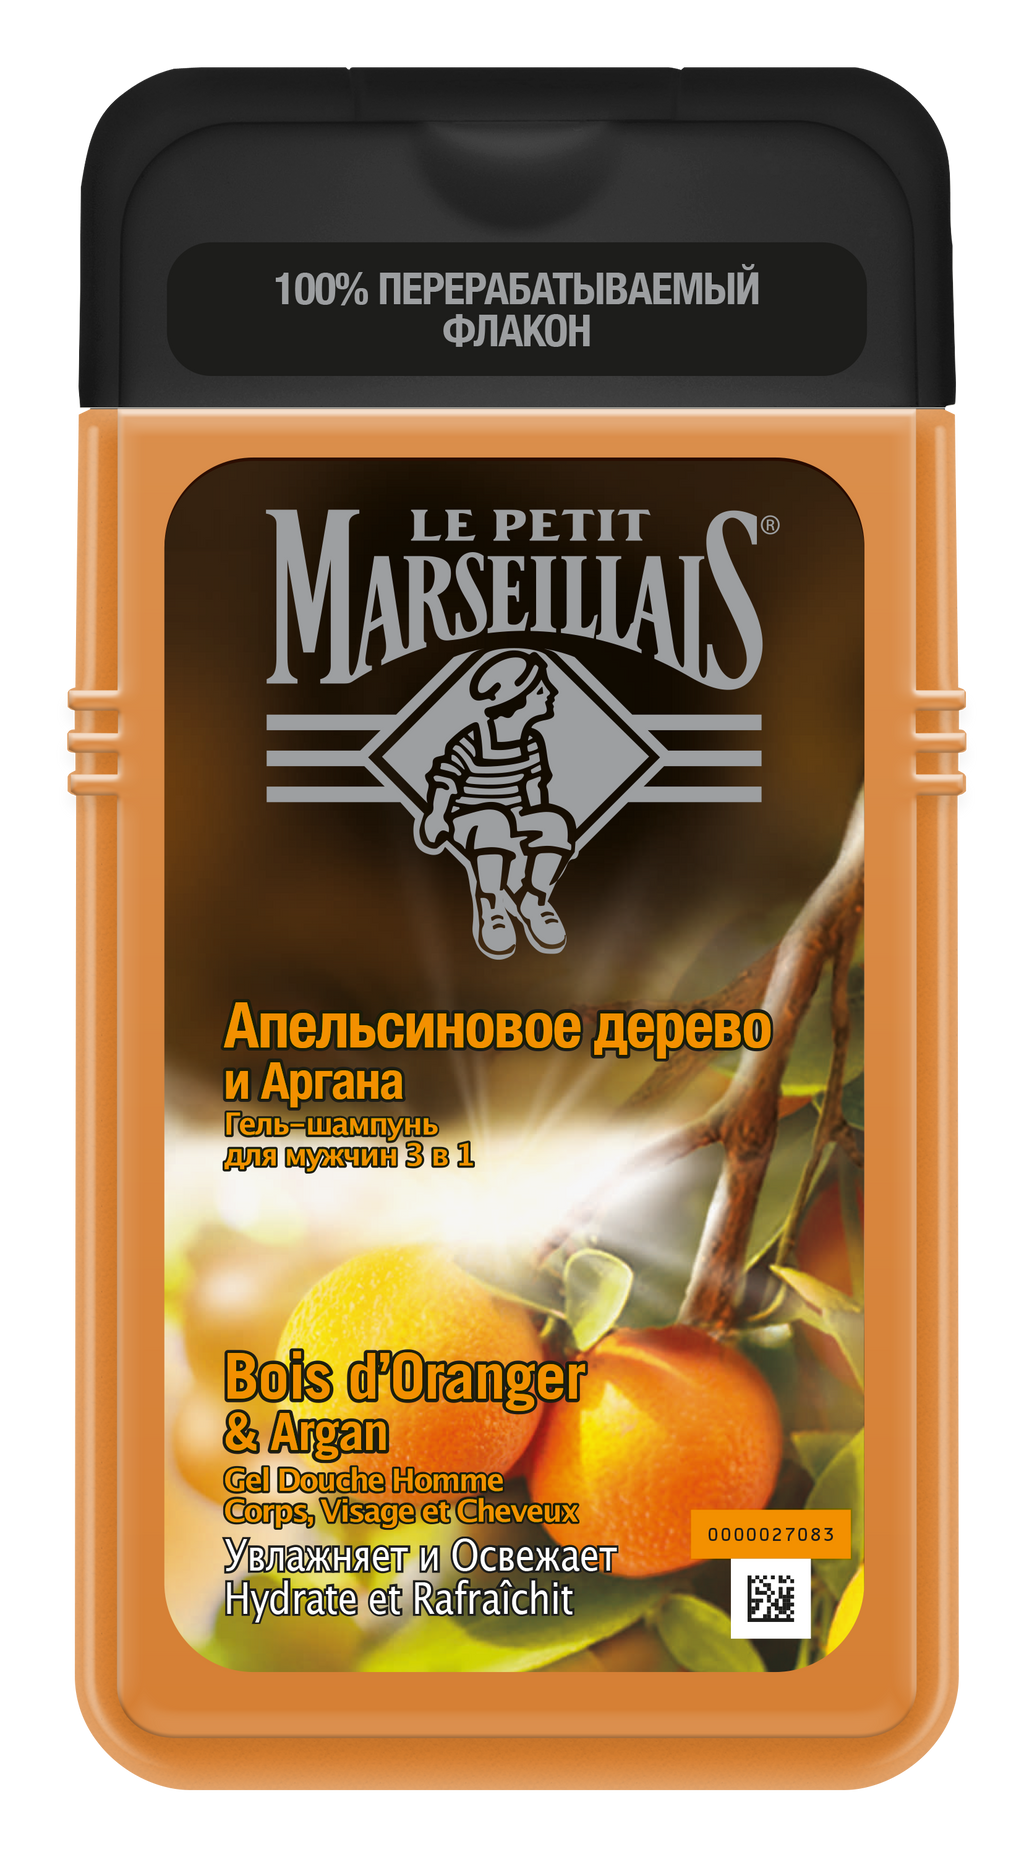 фото упаковки Le Petit Marseillais Гель-Шампунь Апельсиновое дерево и Аргана 3в1